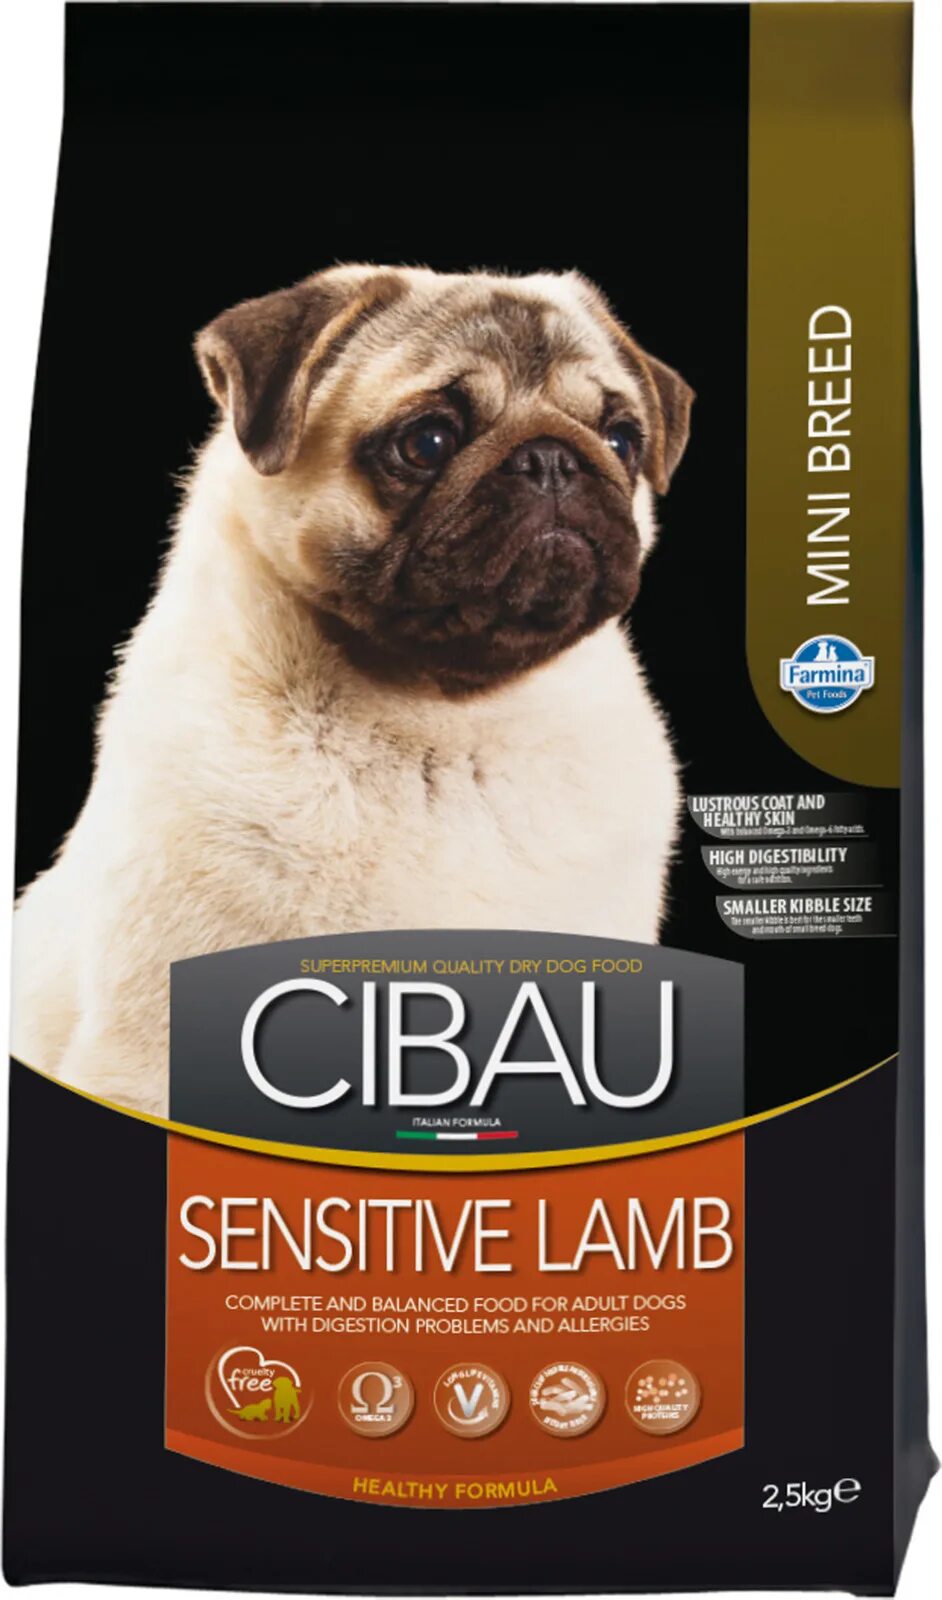 Cibau sensitive Lamb Mini 2.5кг. Корм для собак Фармина Сибау. Farmina Cibau sensitive Lamb 12 кг. Фармина Cibau для собак ягненок. Сухой корм farmina для собак мелких